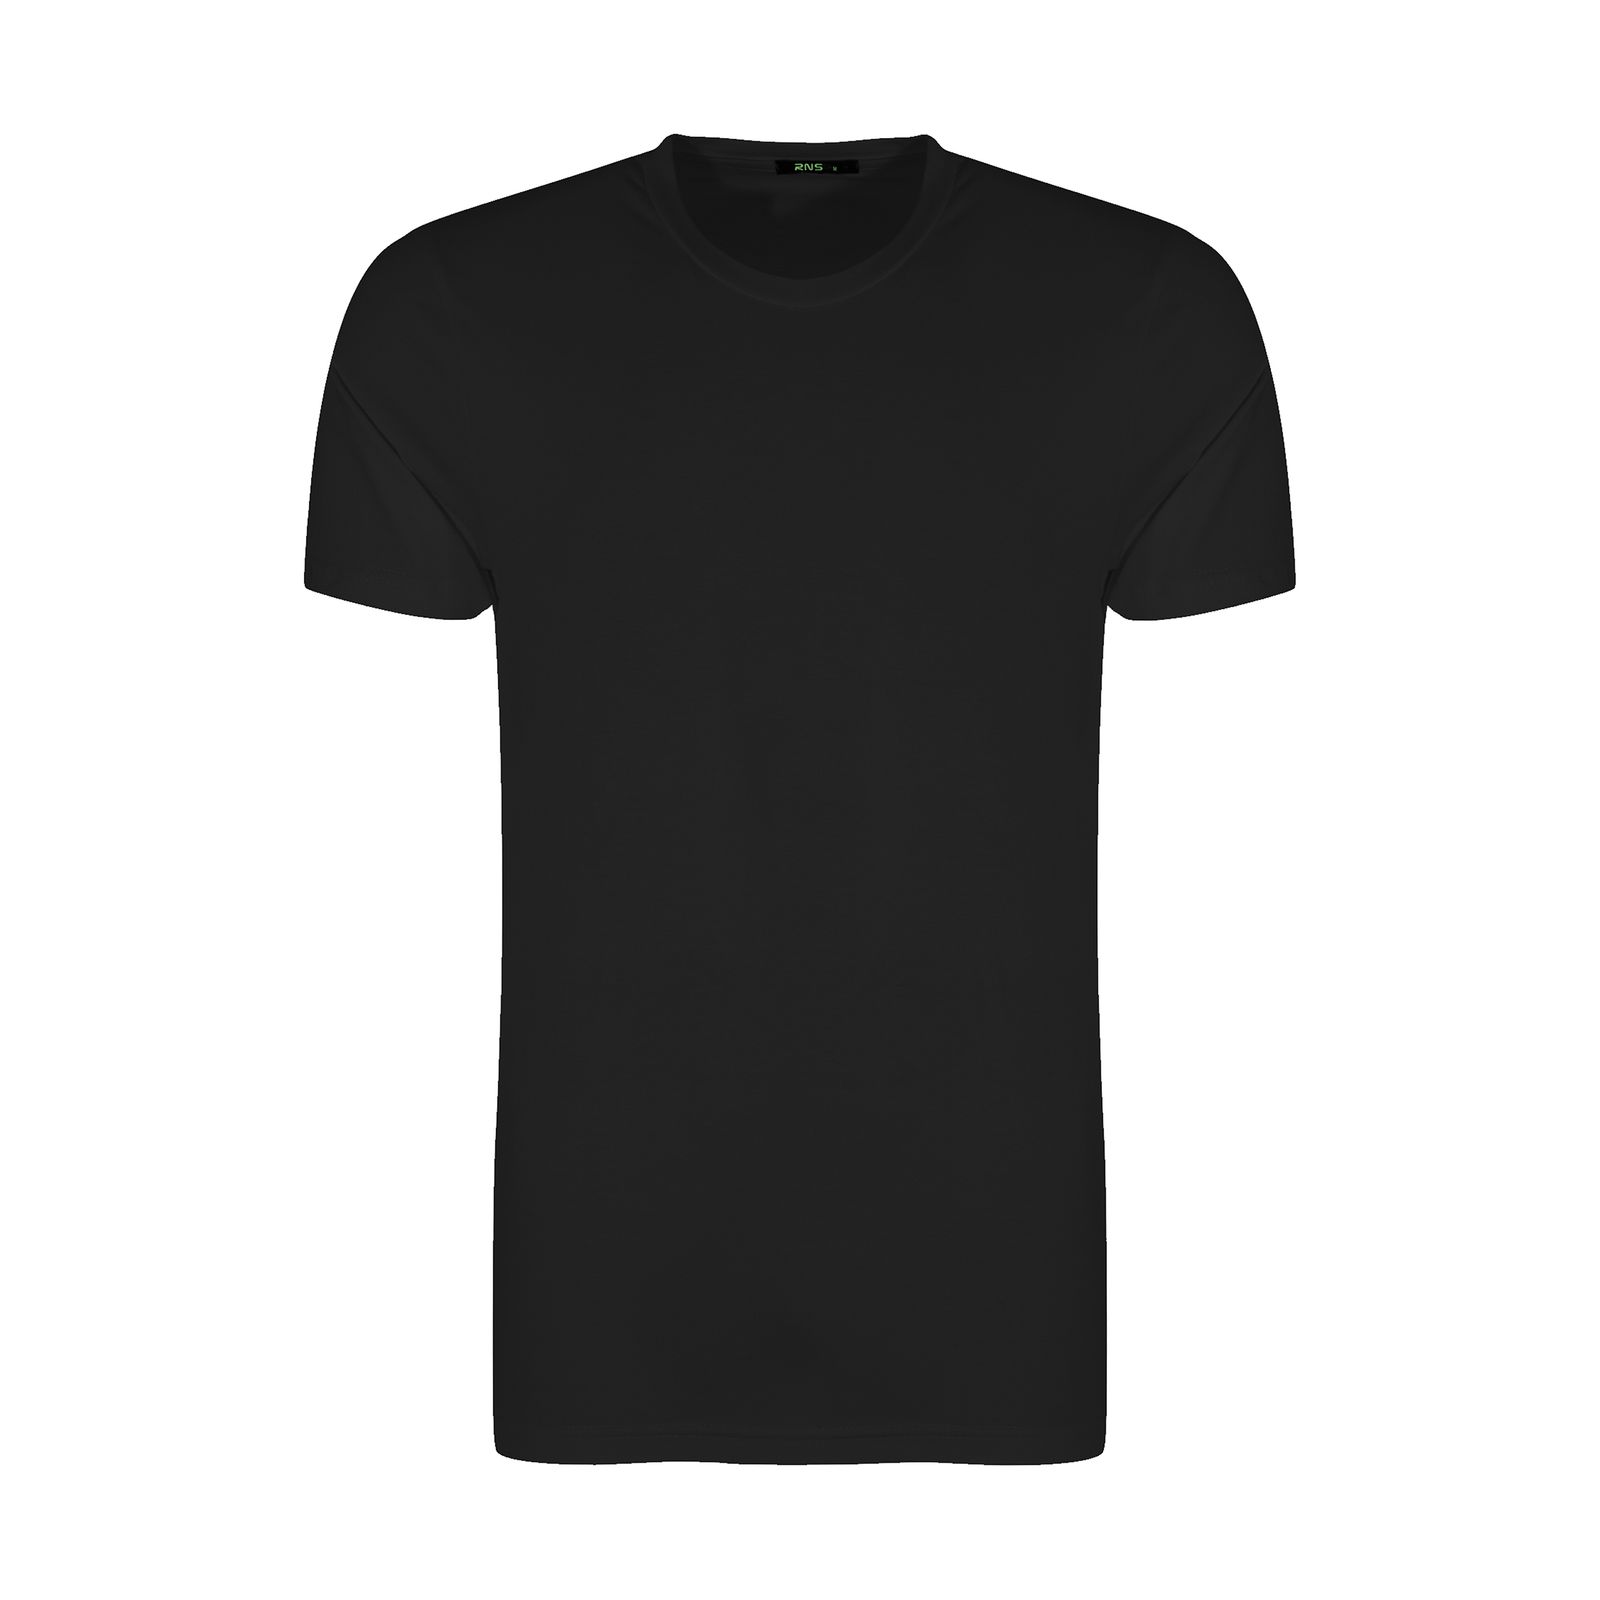 تی شرت مردانه آر ان اس مدل 131005-99 -  - 1